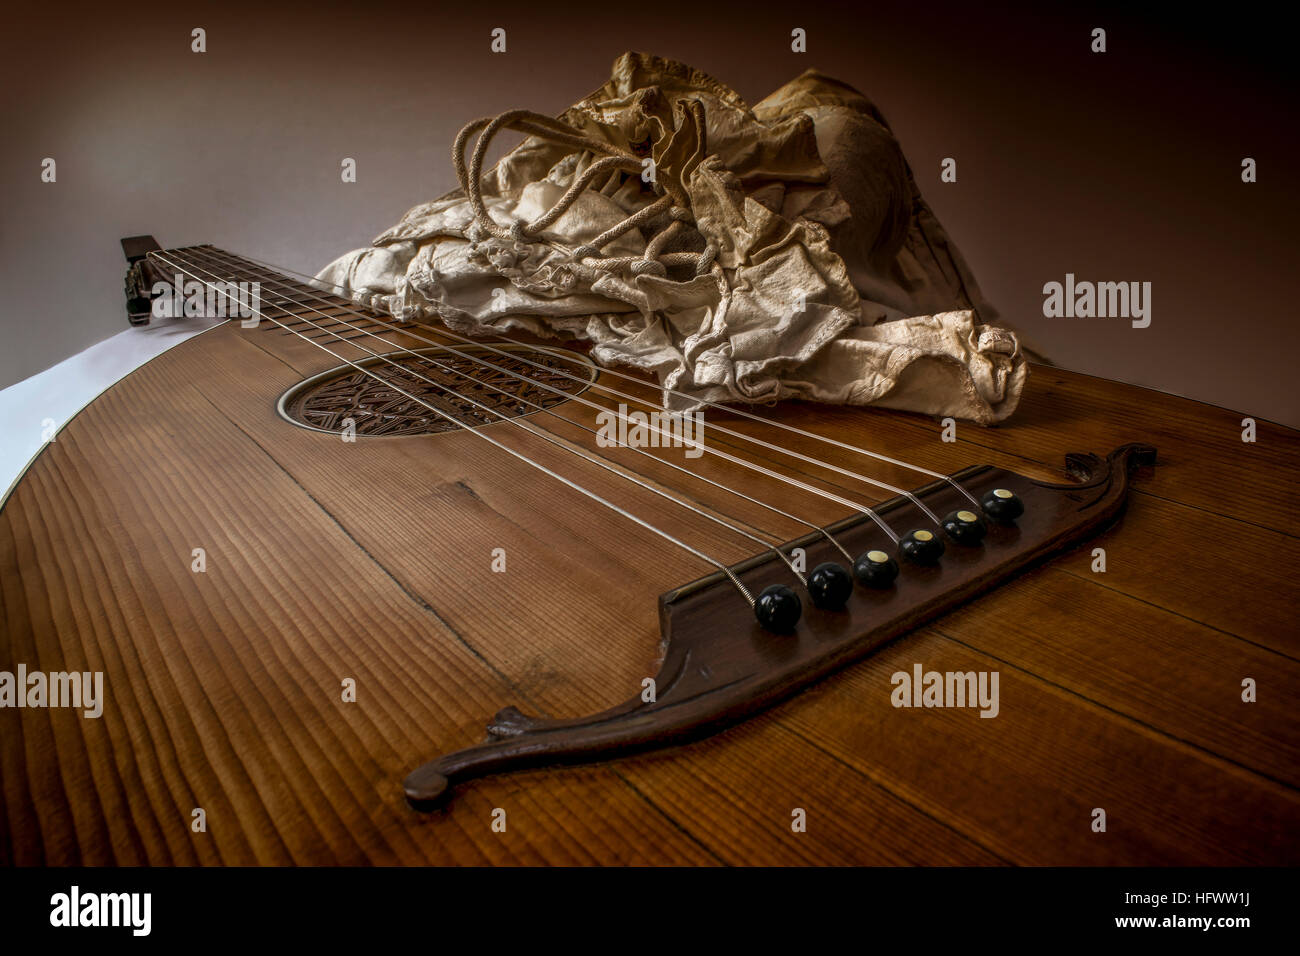 Oud luth et guitare baroque rustique blanc shirt dans la forme et la posture du joueur Banque D'Images